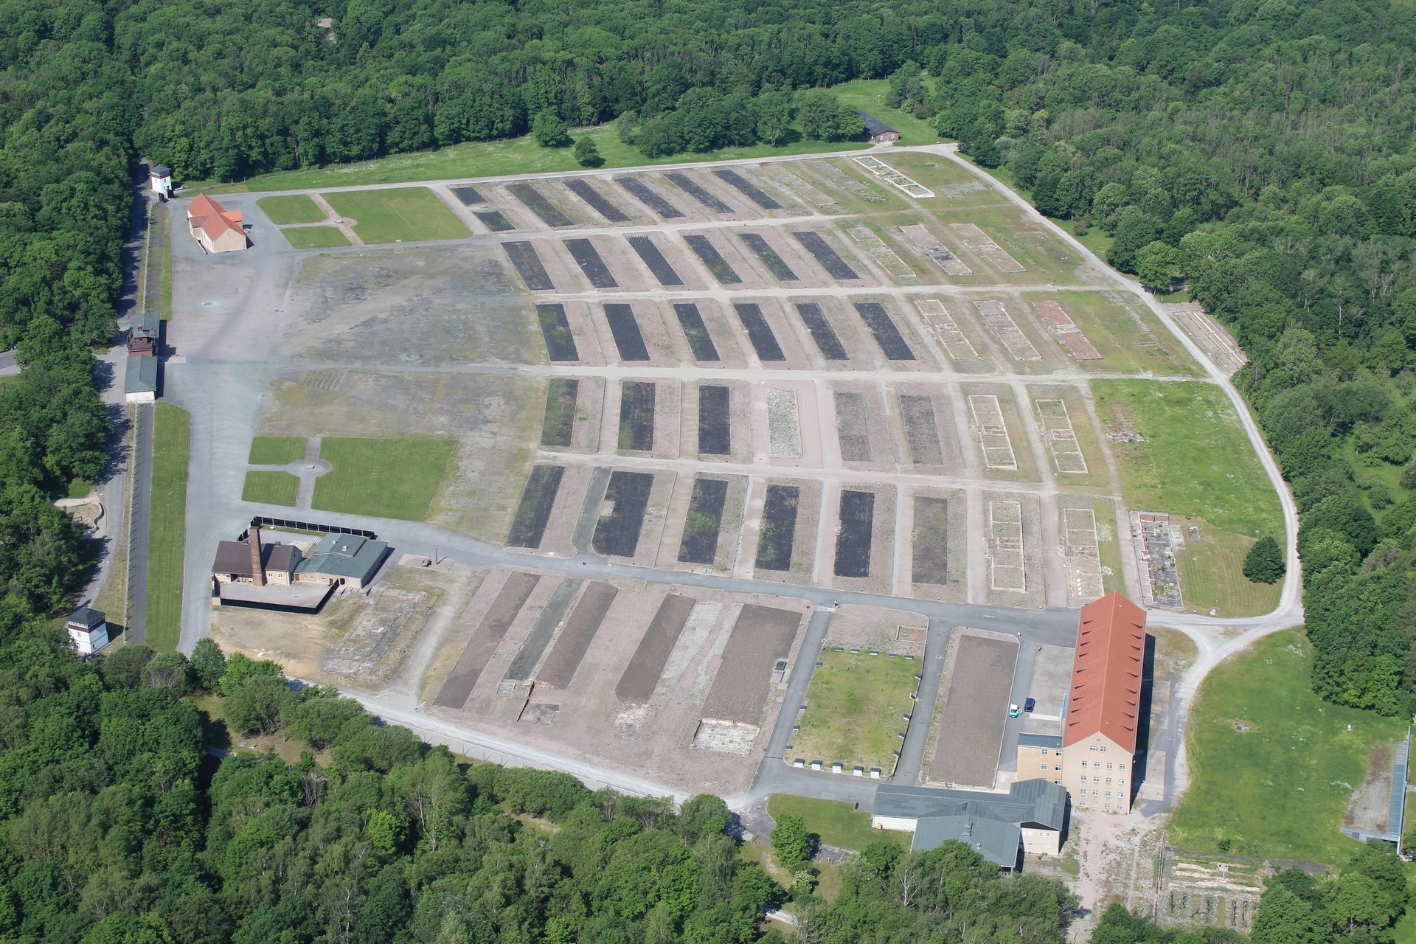 Blick aus der Luft auf das ehemalige Häftlingslager. Dunkle Flächen markieren die Grundrisse der Baracken. Wenige Gebäude stehen noch. Rundherum Wald.